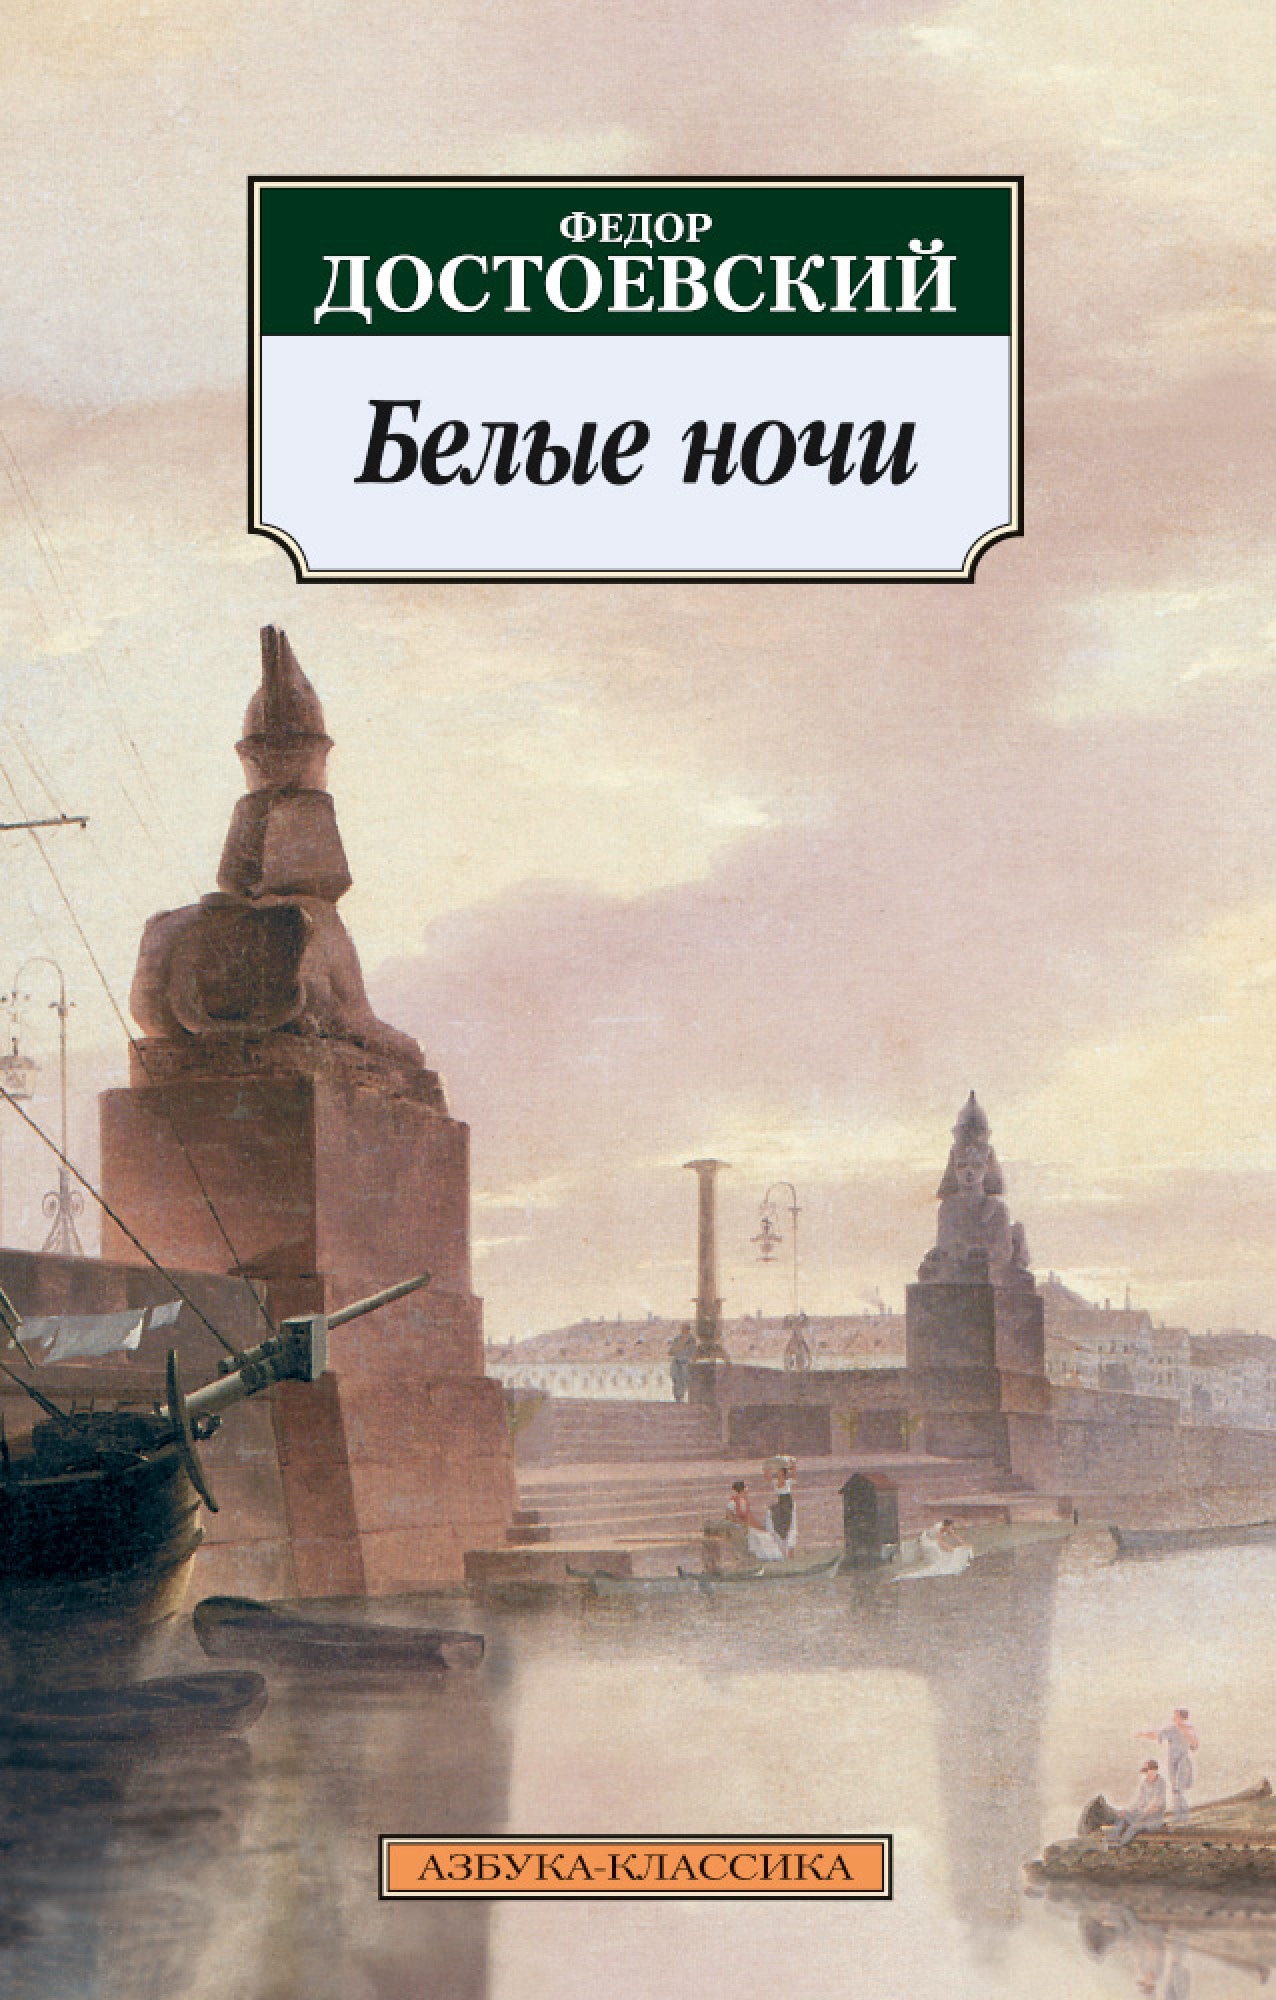 Книга «Белые ночи» Федор Достоевский — 2021 г.